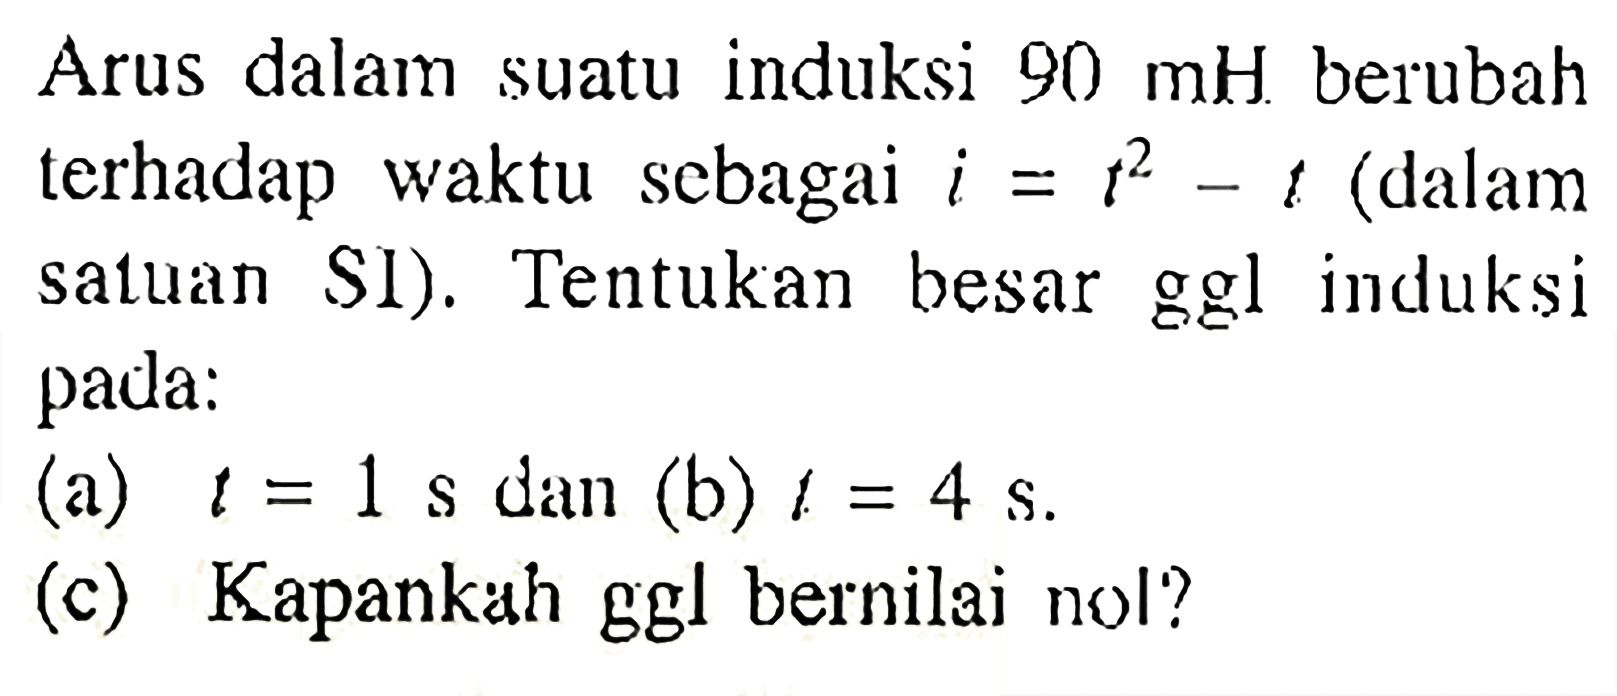 Arus dalam suatu induksi 90 mH berubah terhadap waktu sebagai i = t^2 - t (dalam satuan SI). Tentukan besar ggl induksi pada: (a) t= 1 s dan (b) t = 4 s (c) Kapankah ggl bernilai nol?